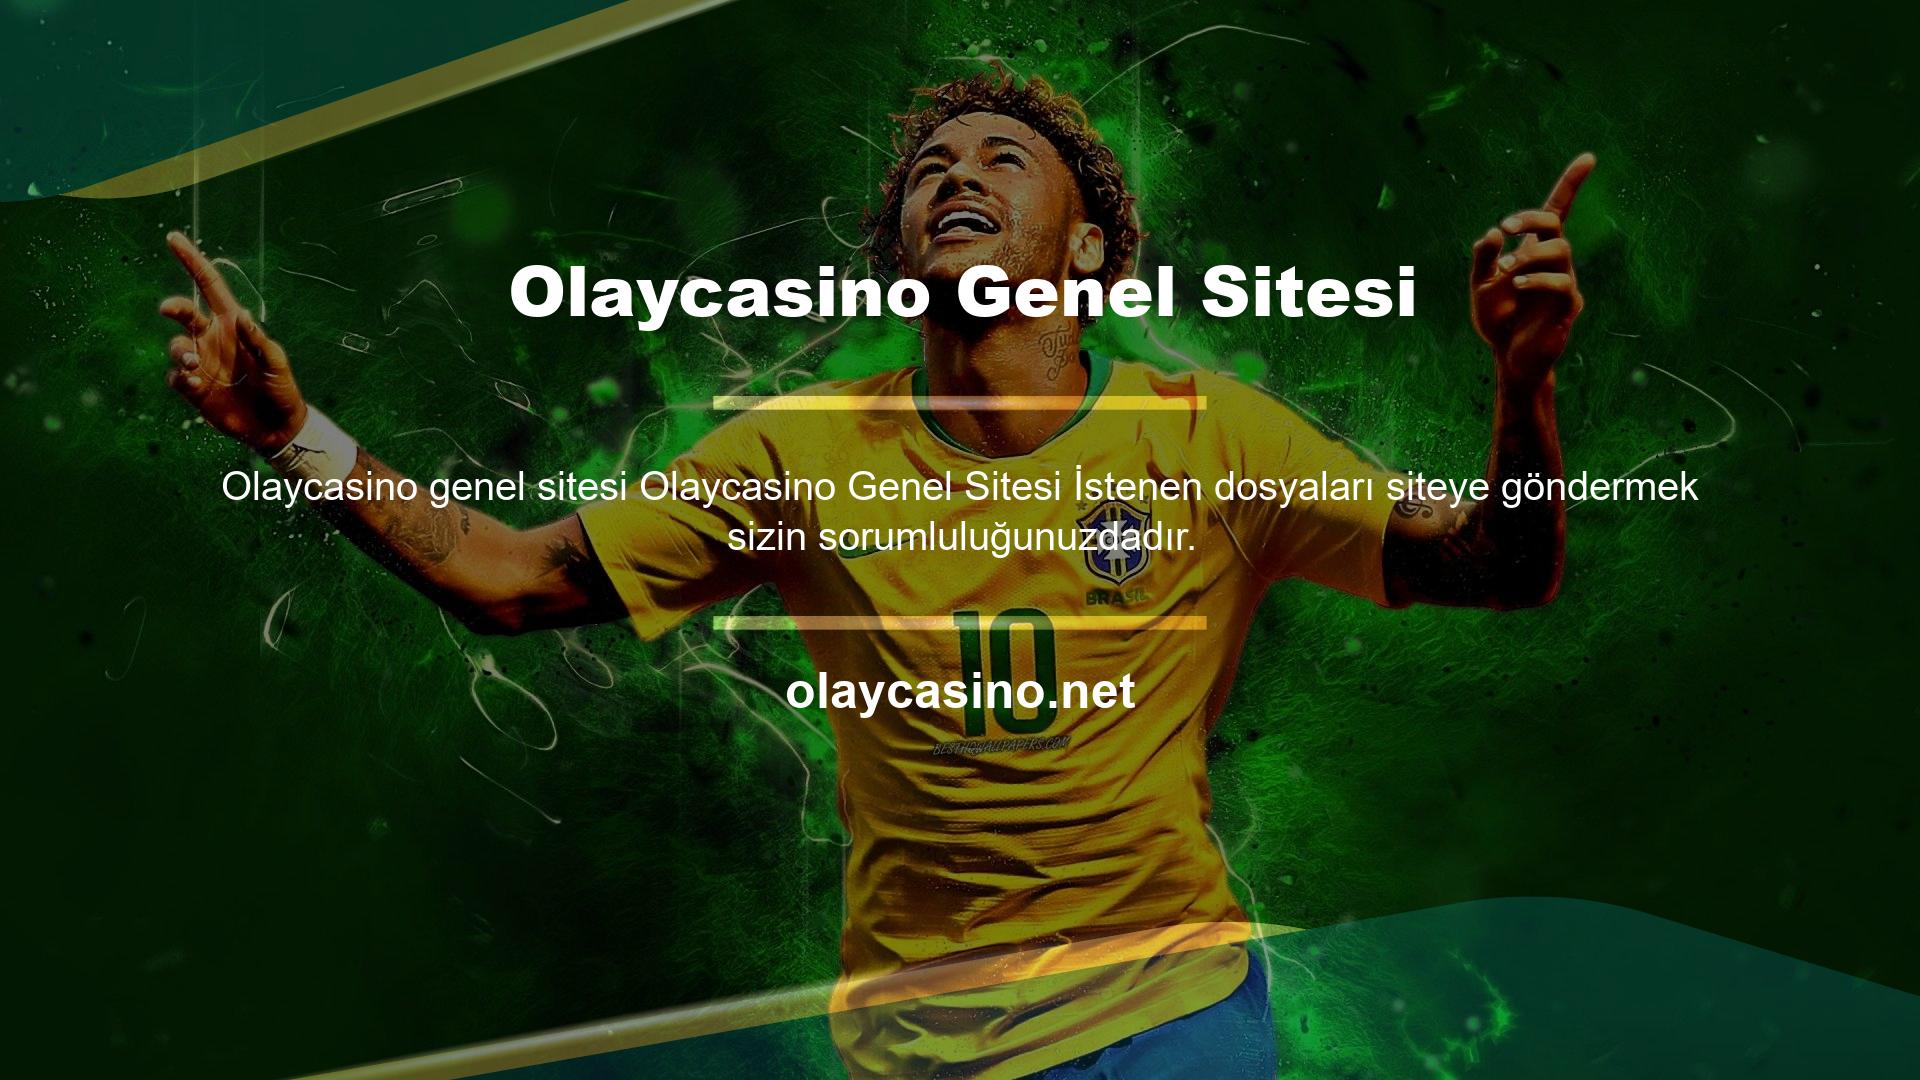 Olaycasino Genel Sitesi